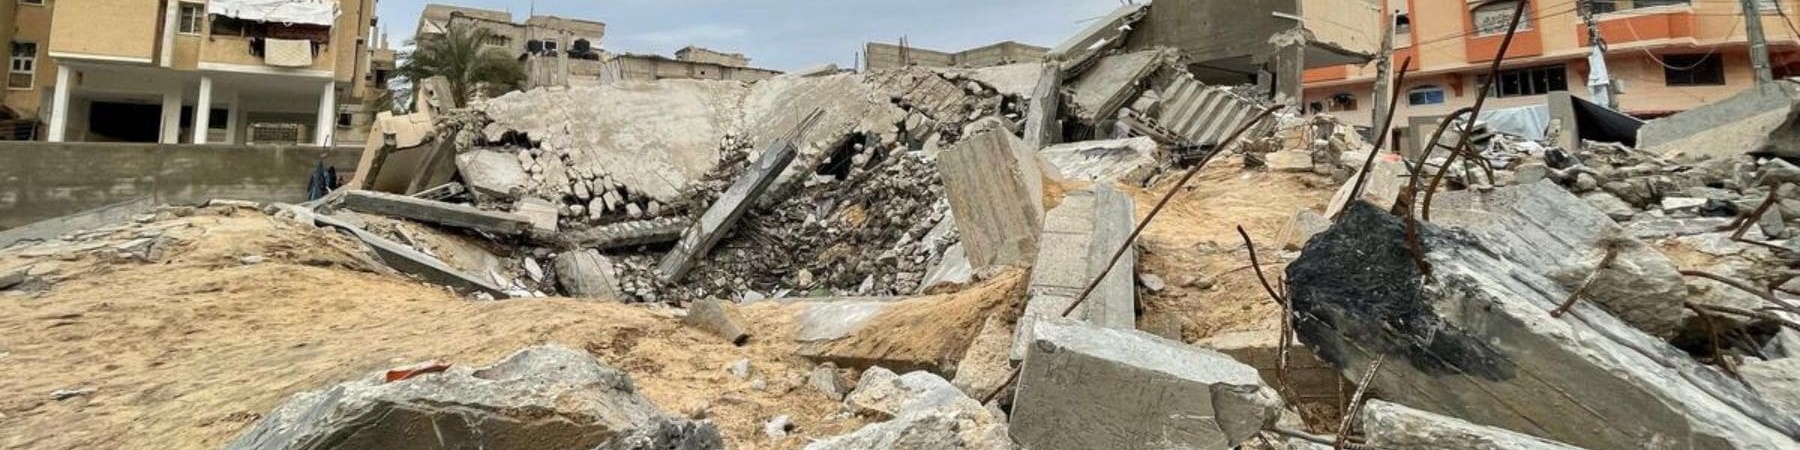 palazzi distrutti dai bombardamenti a Gaza